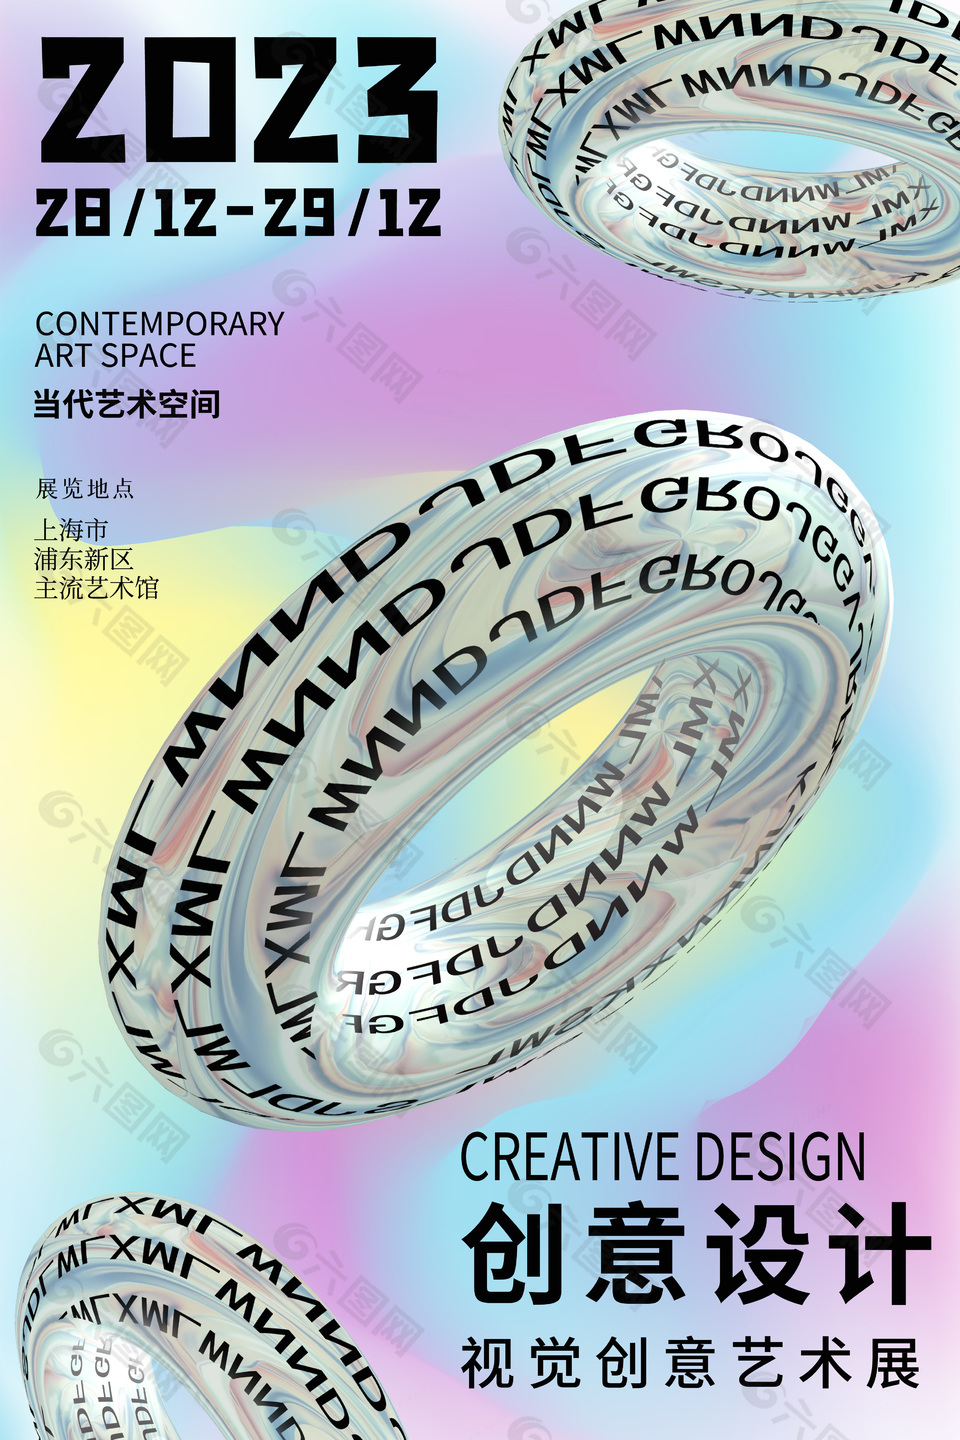 3d视觉创意艺术展宣传海报设计